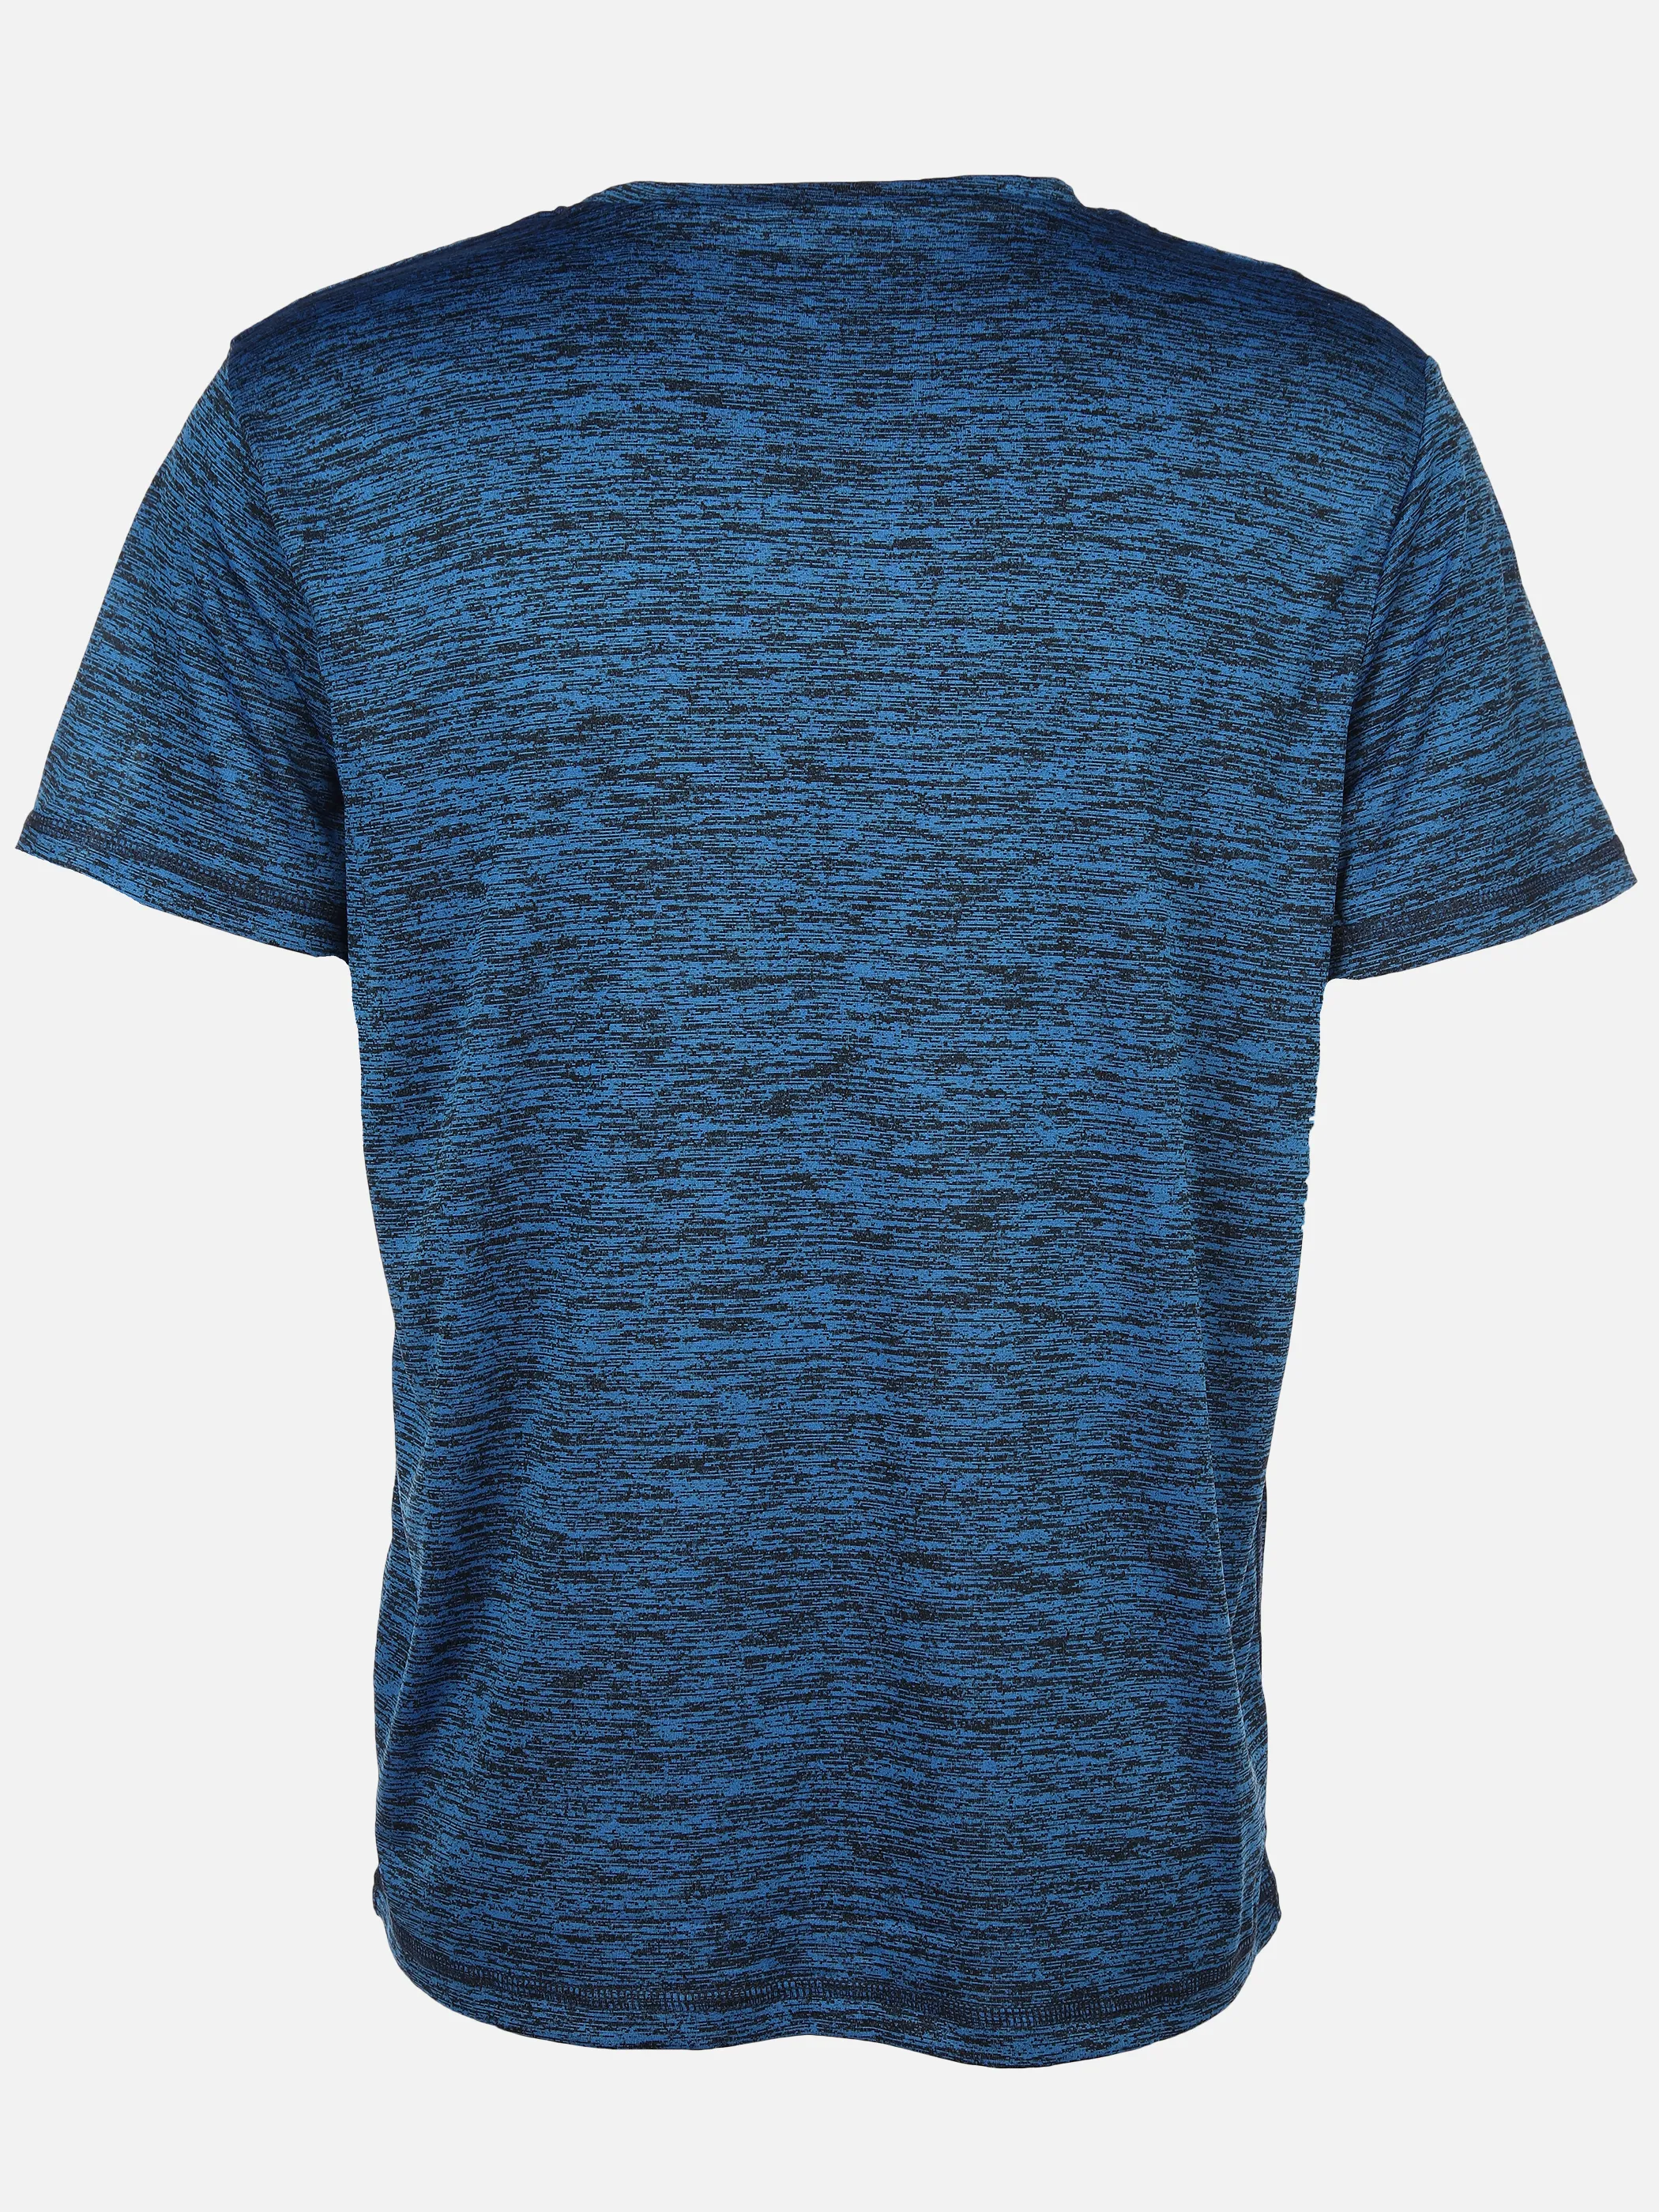 Grinario Sports He- Sport T-Shirt Blau 890091 BLUE MEL. 2